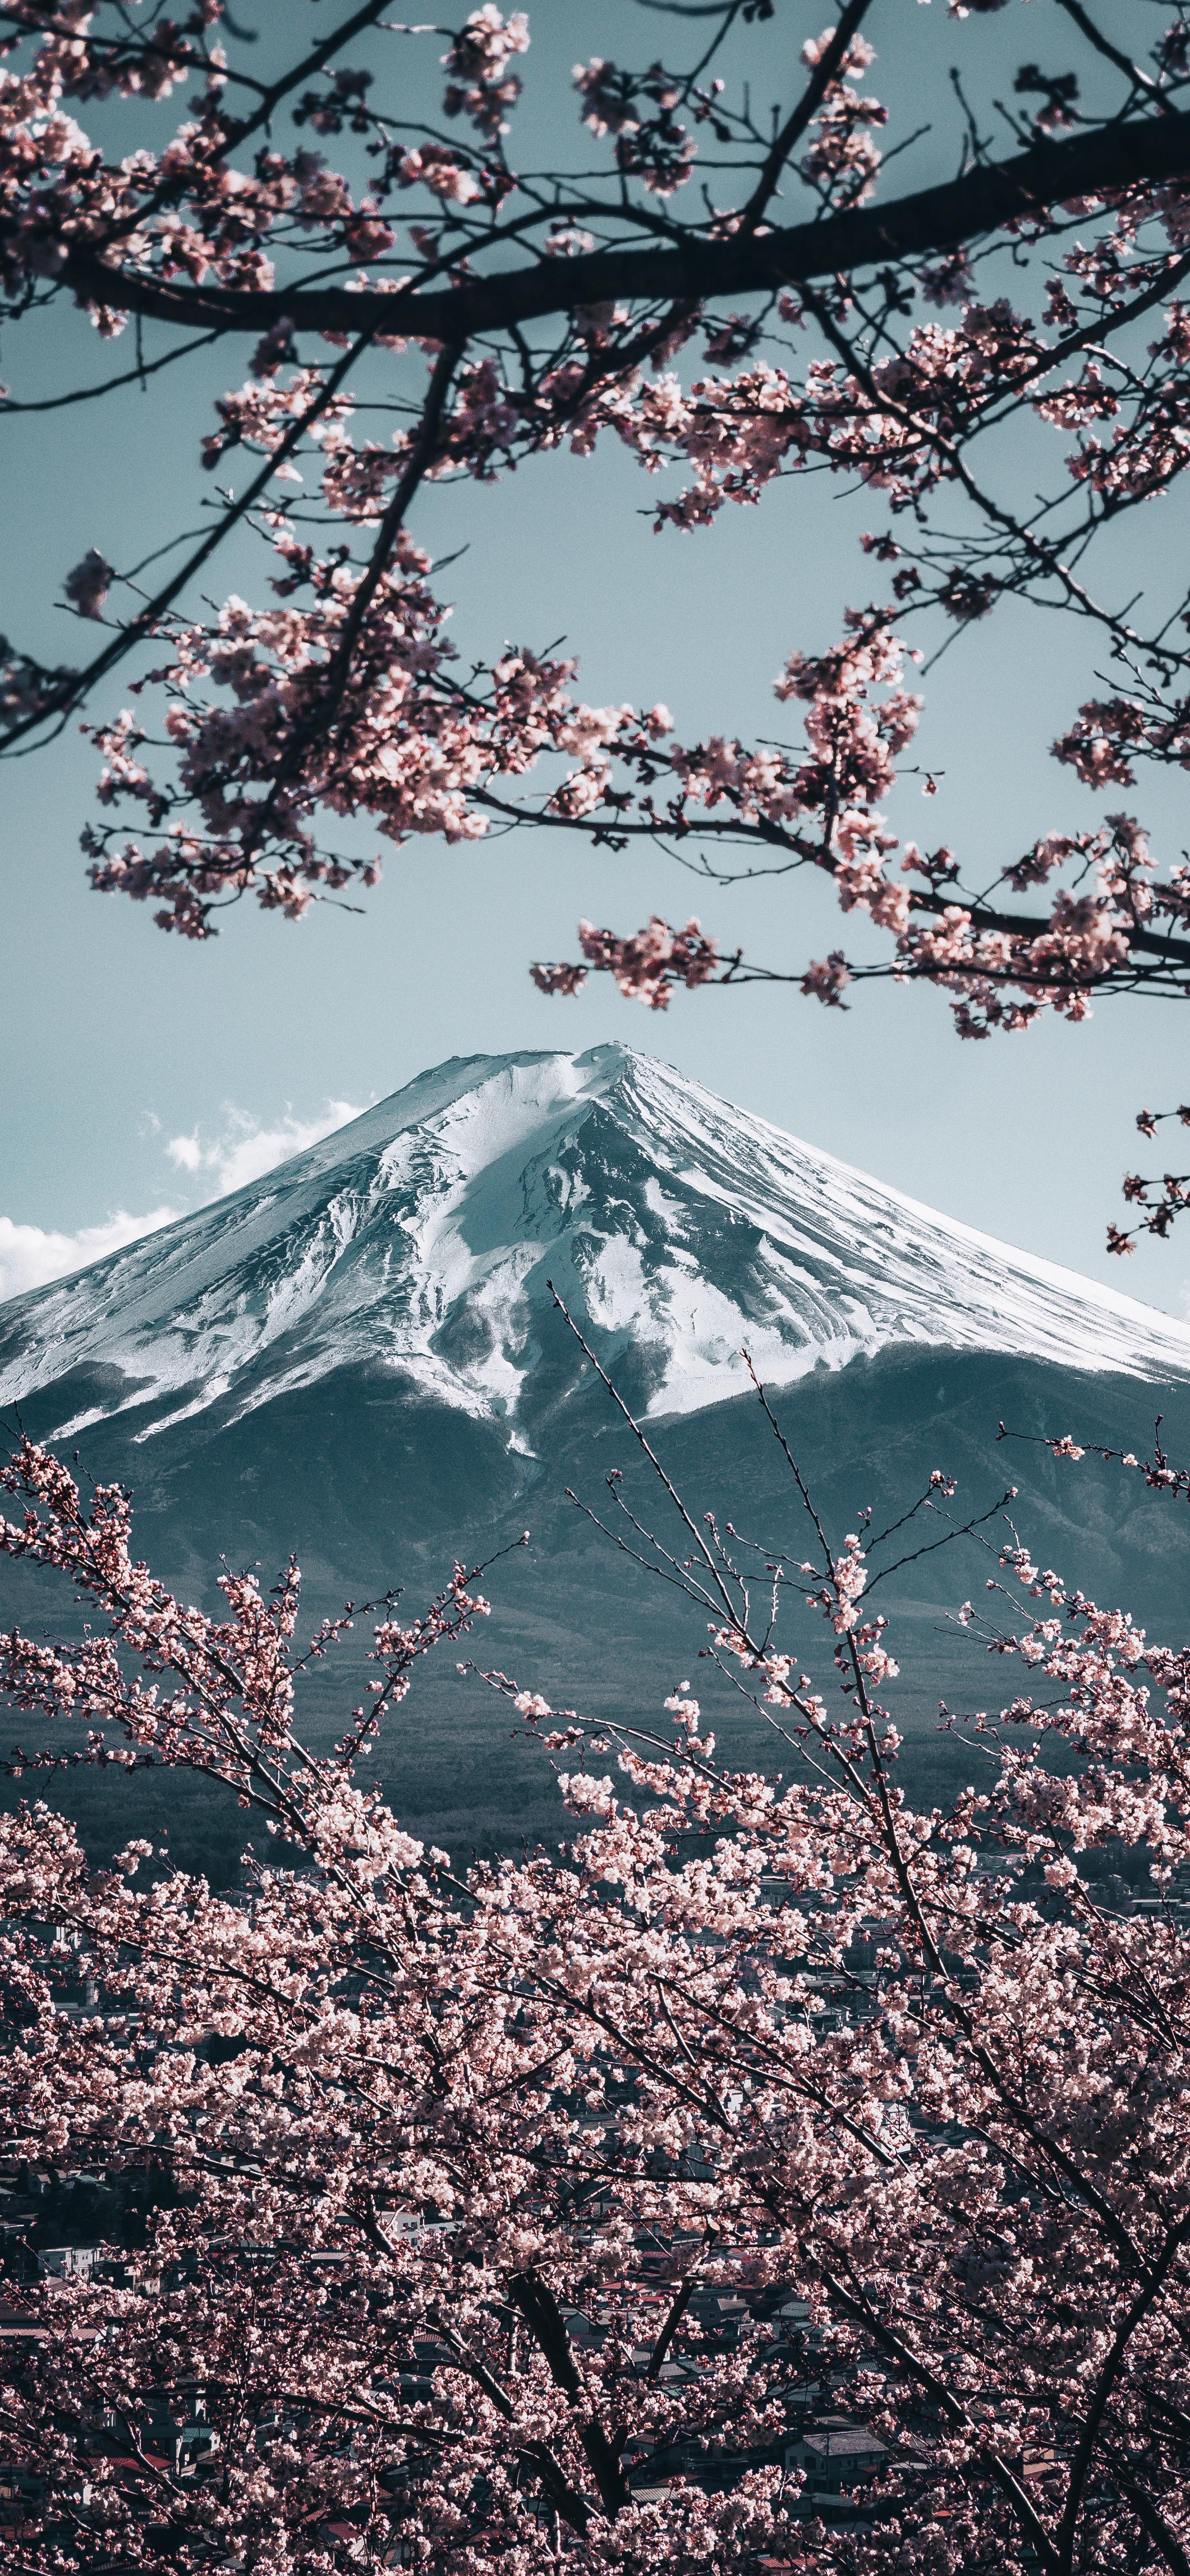 Mt. Fuji with Sakura in Japan [2121x4592]